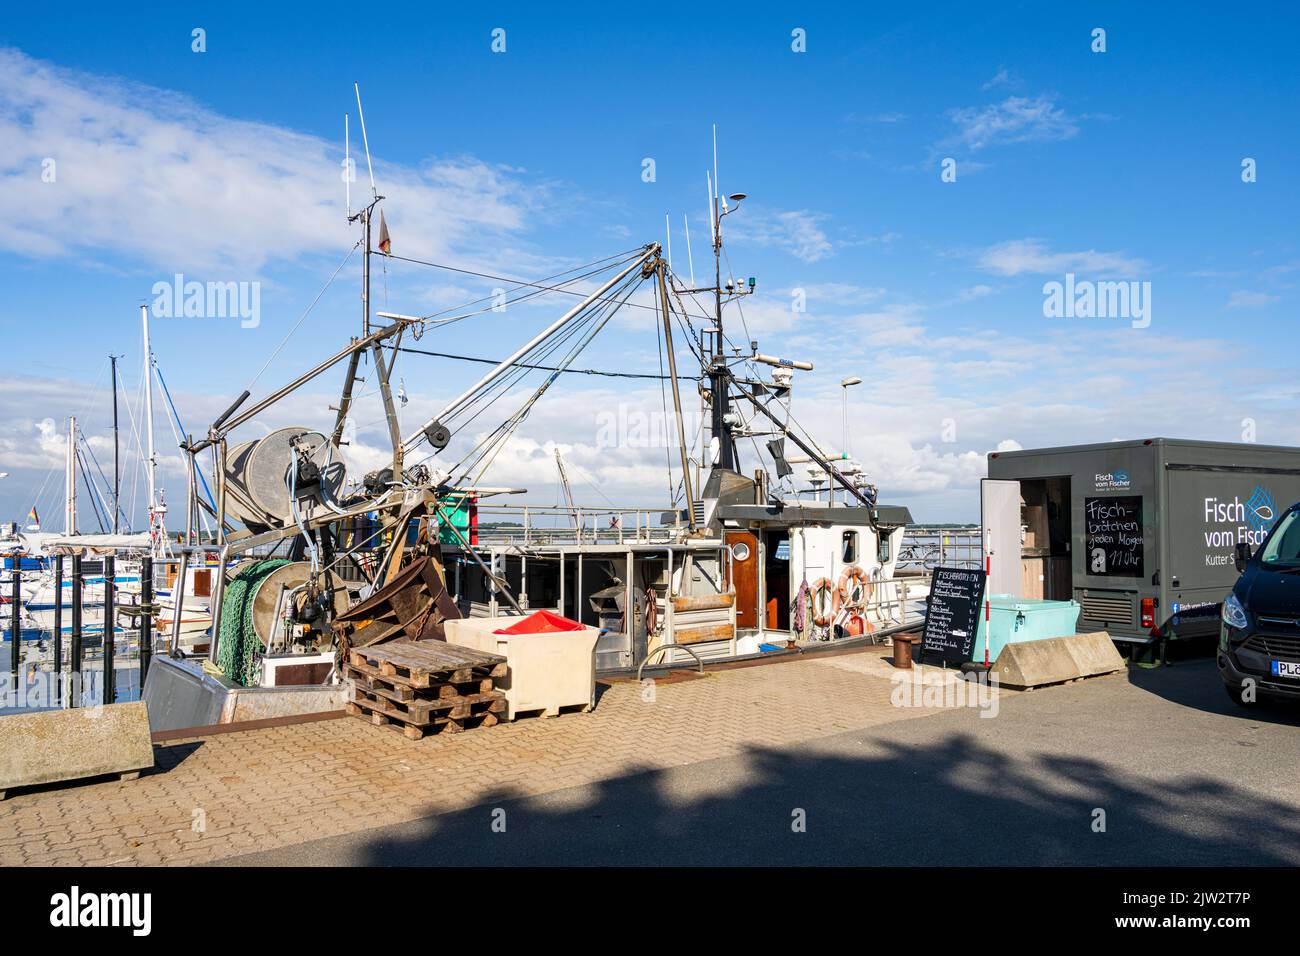 Fischerhafen an der Kieler Förde in Möltenort am frühen morgen im Sommer Frischfisch direkt vom Kutter wird angeboten Foto Stock